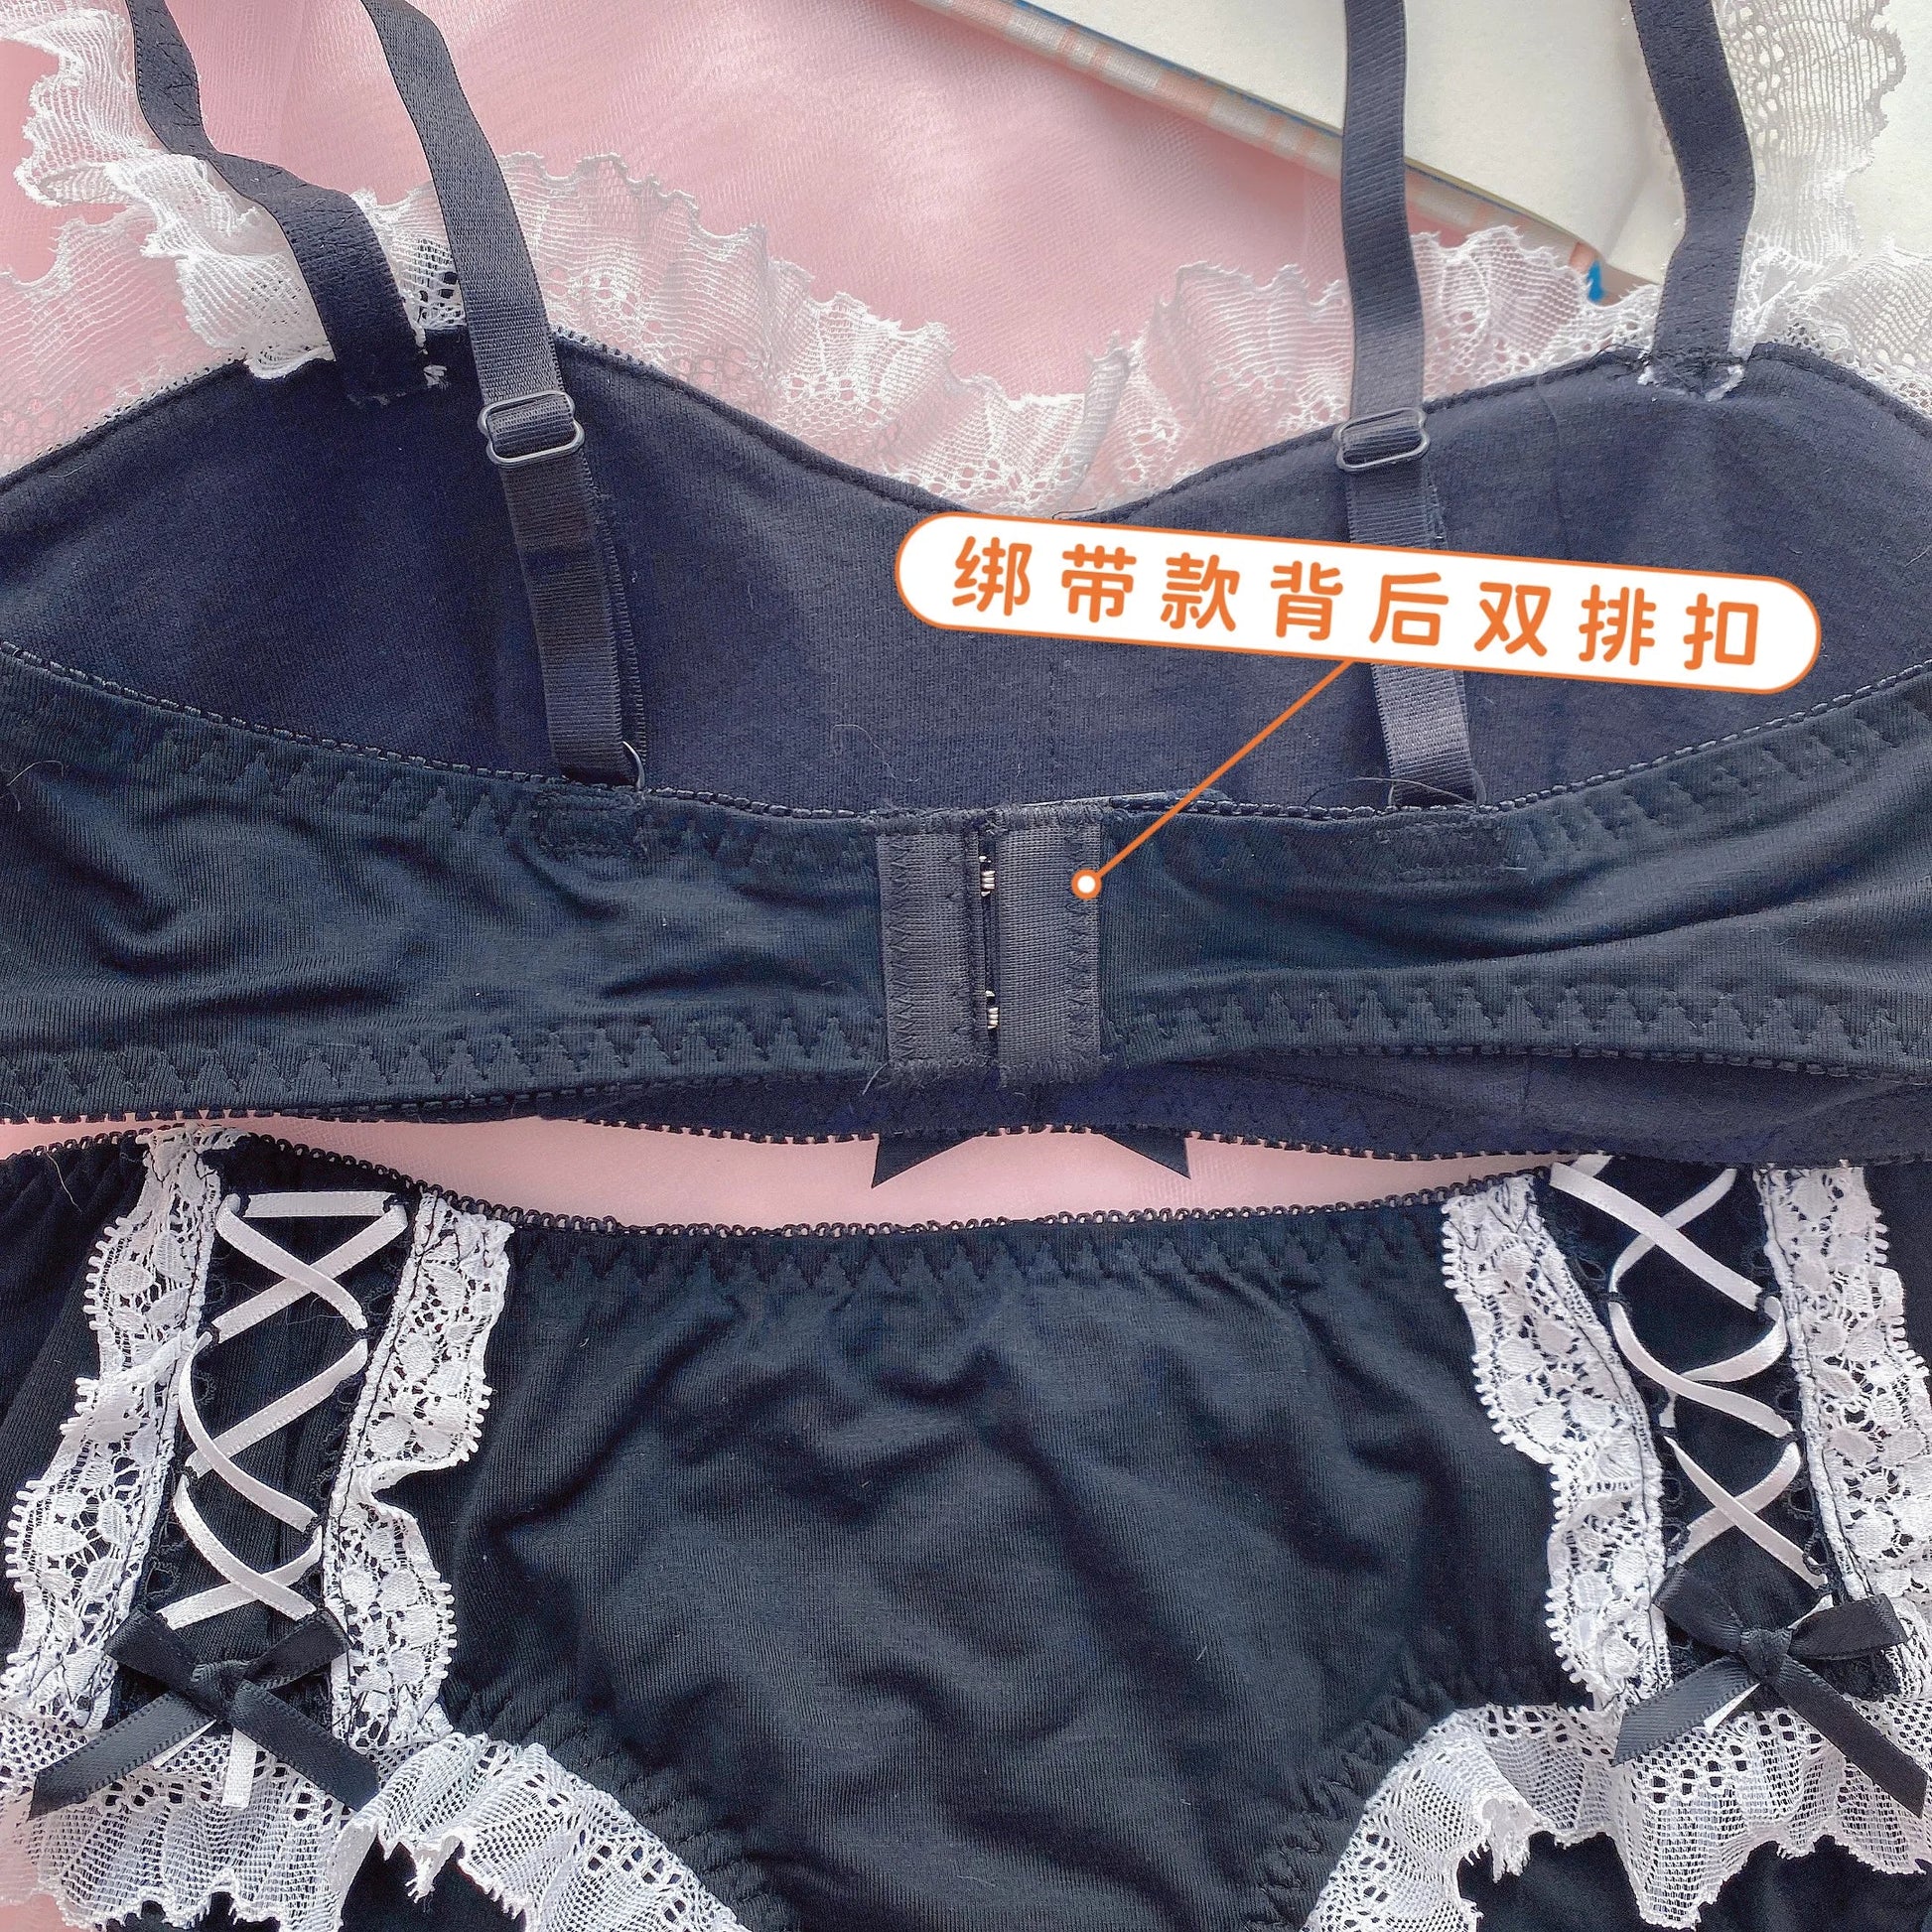 Harajuku Kawaii Fashion Maid Style Black Lingerie Set - Sexy Lingerie - Lingerie - 13 - 2024